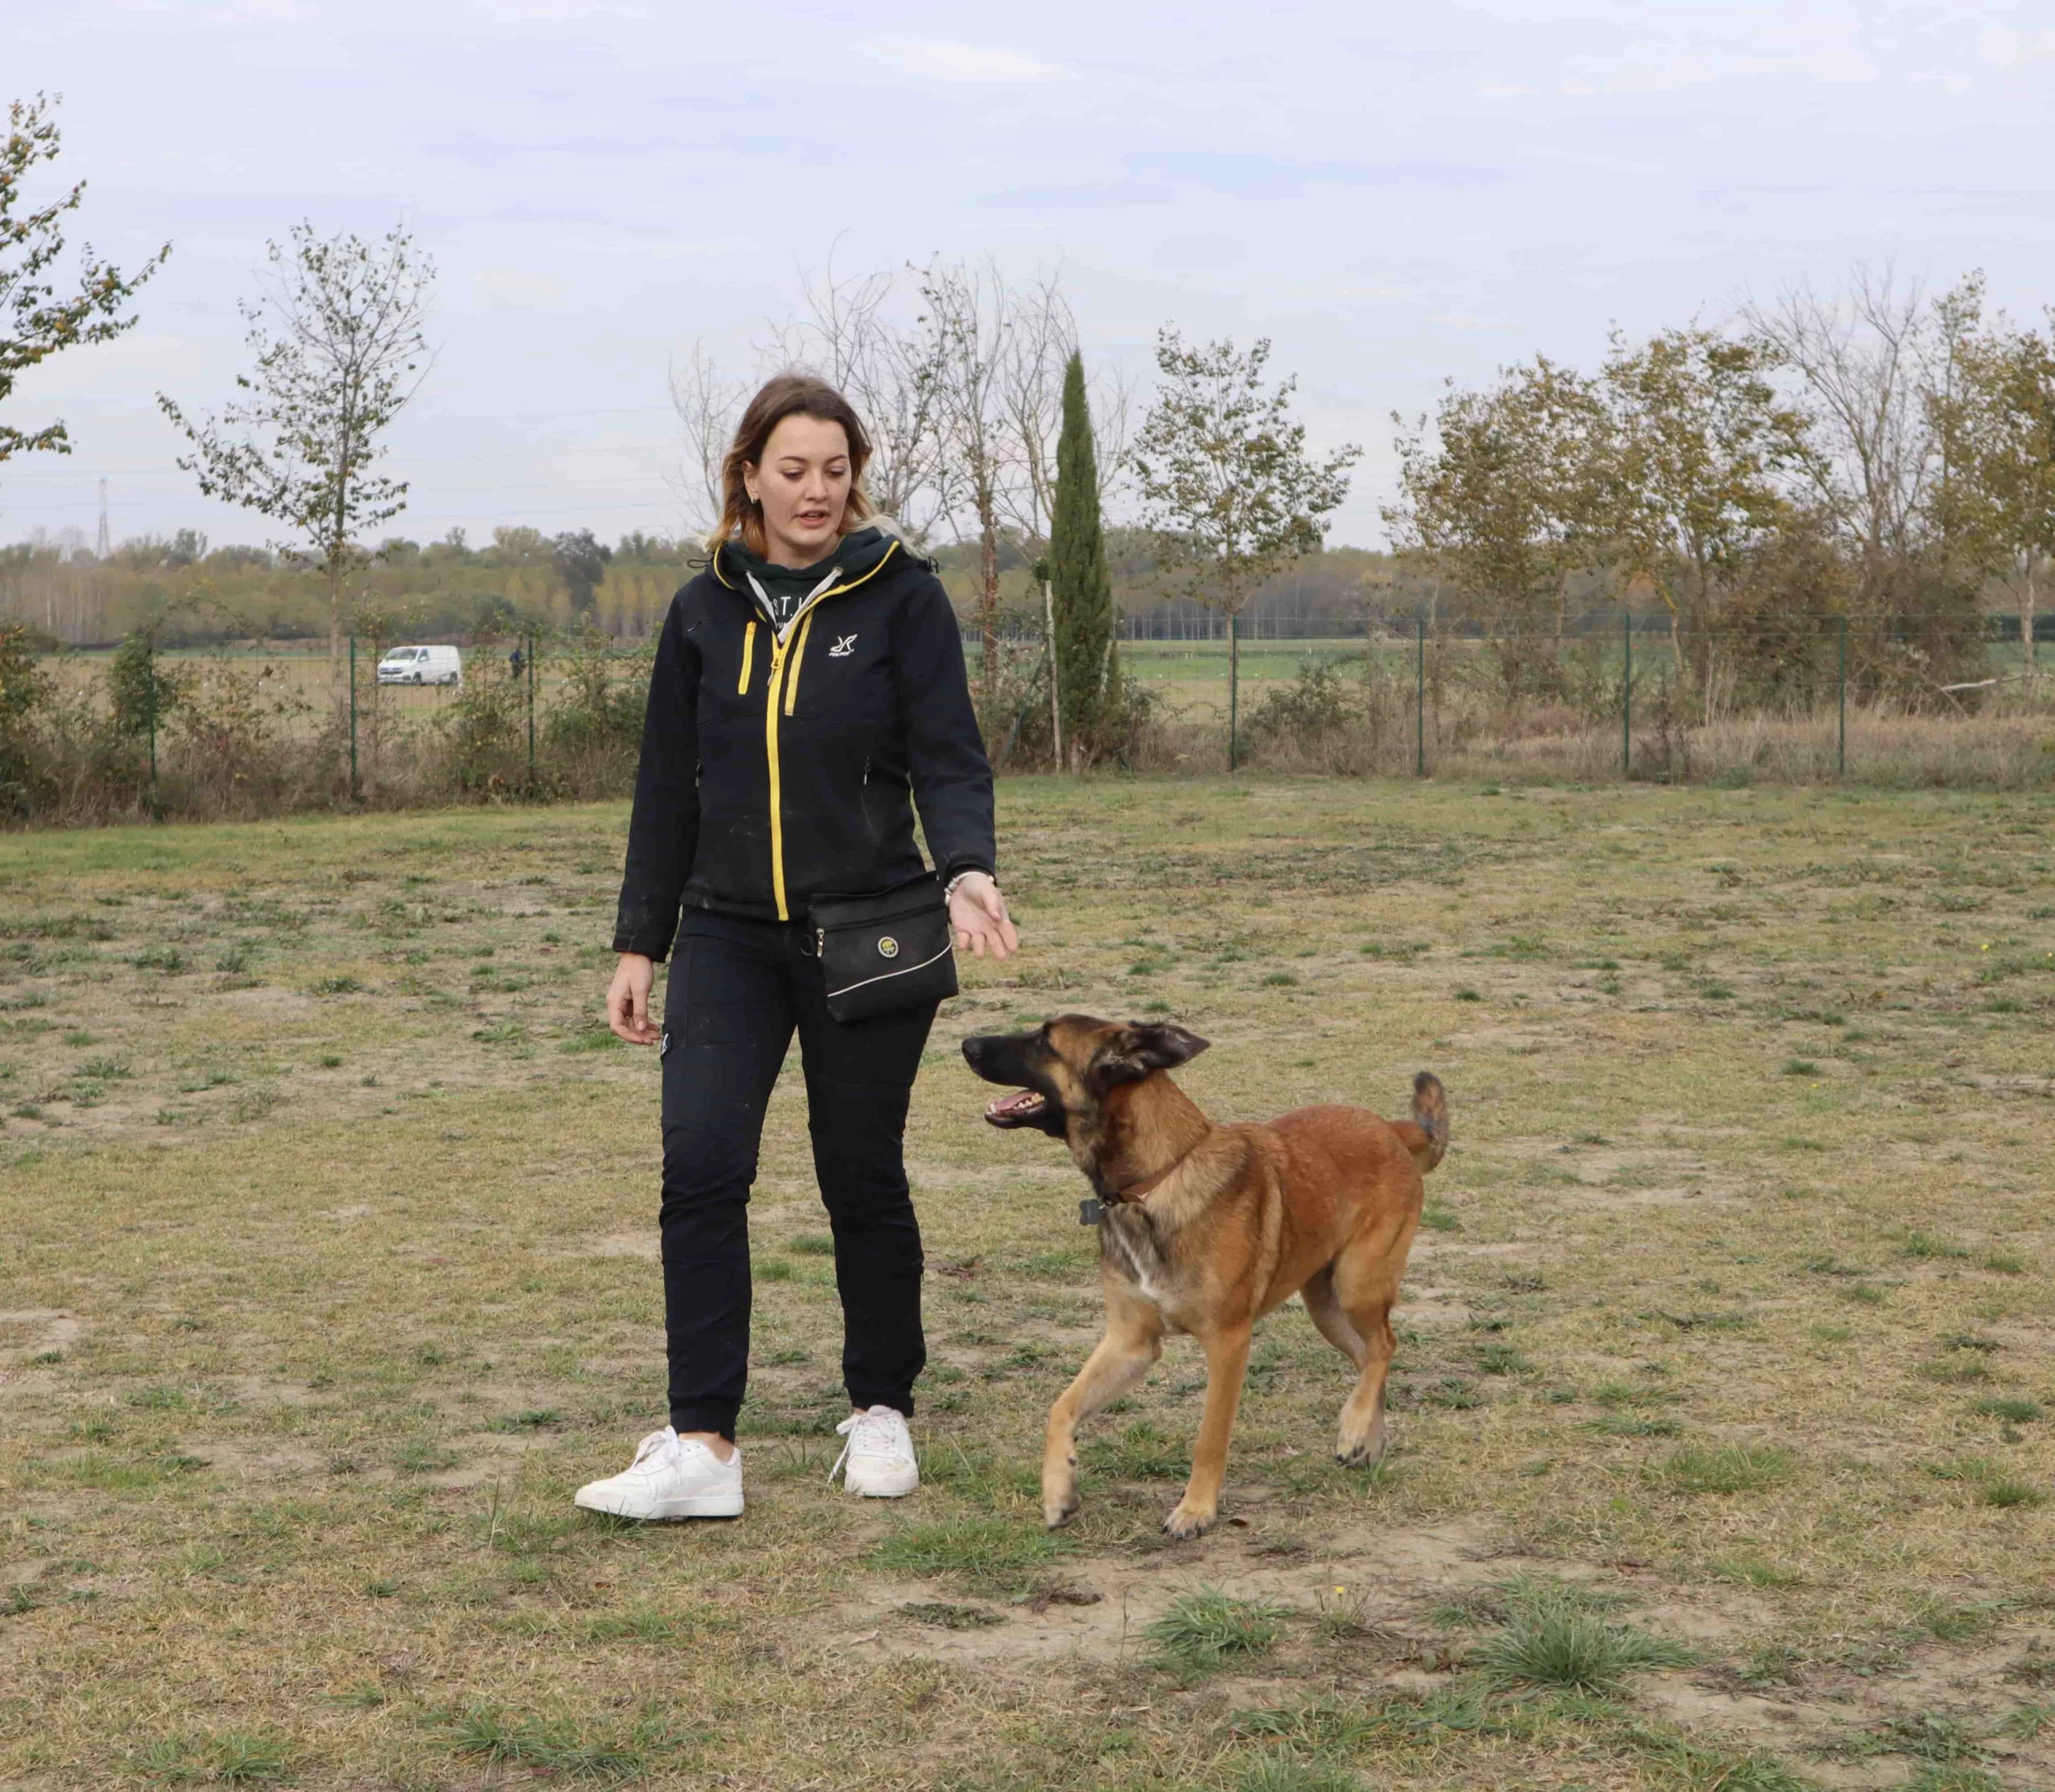 Une étudiante en train de promener son chien, montrant l'importance de la formation pour renforcer la relation entre les propriétaires et leurs animaux